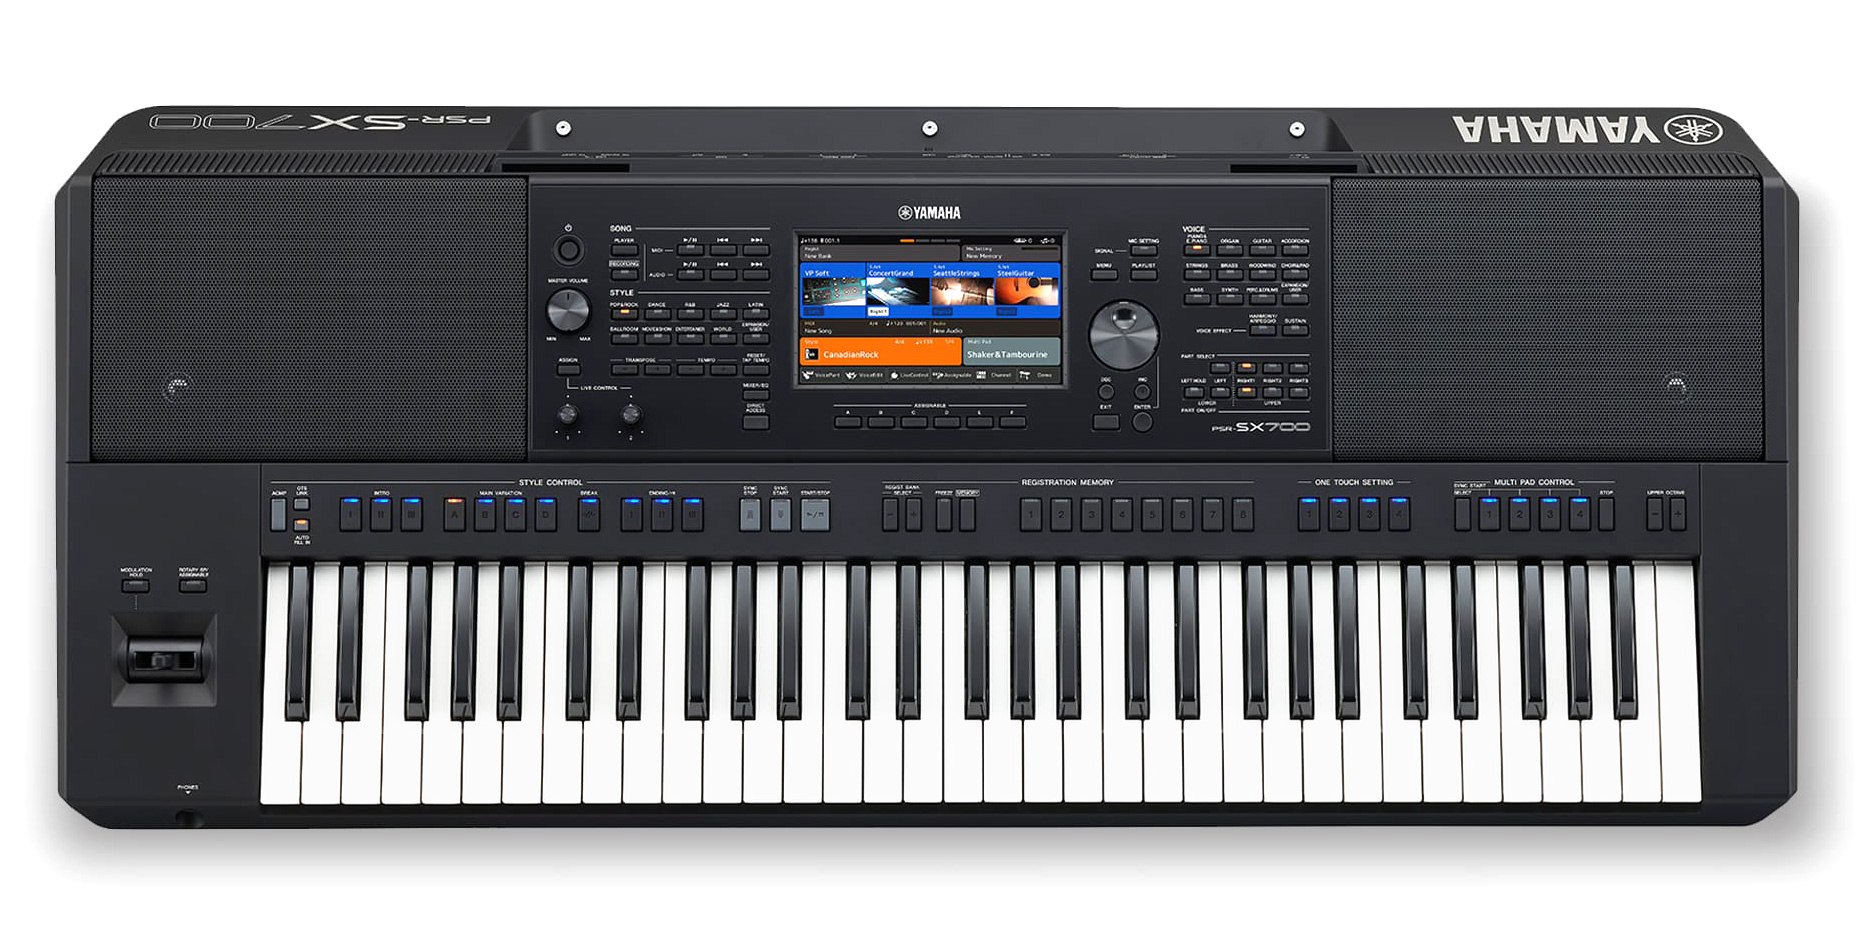 YAMAHA PSR-SX700 Синтезатор, Станция аранжировщика, 61 клавиша синтезаторного типа: